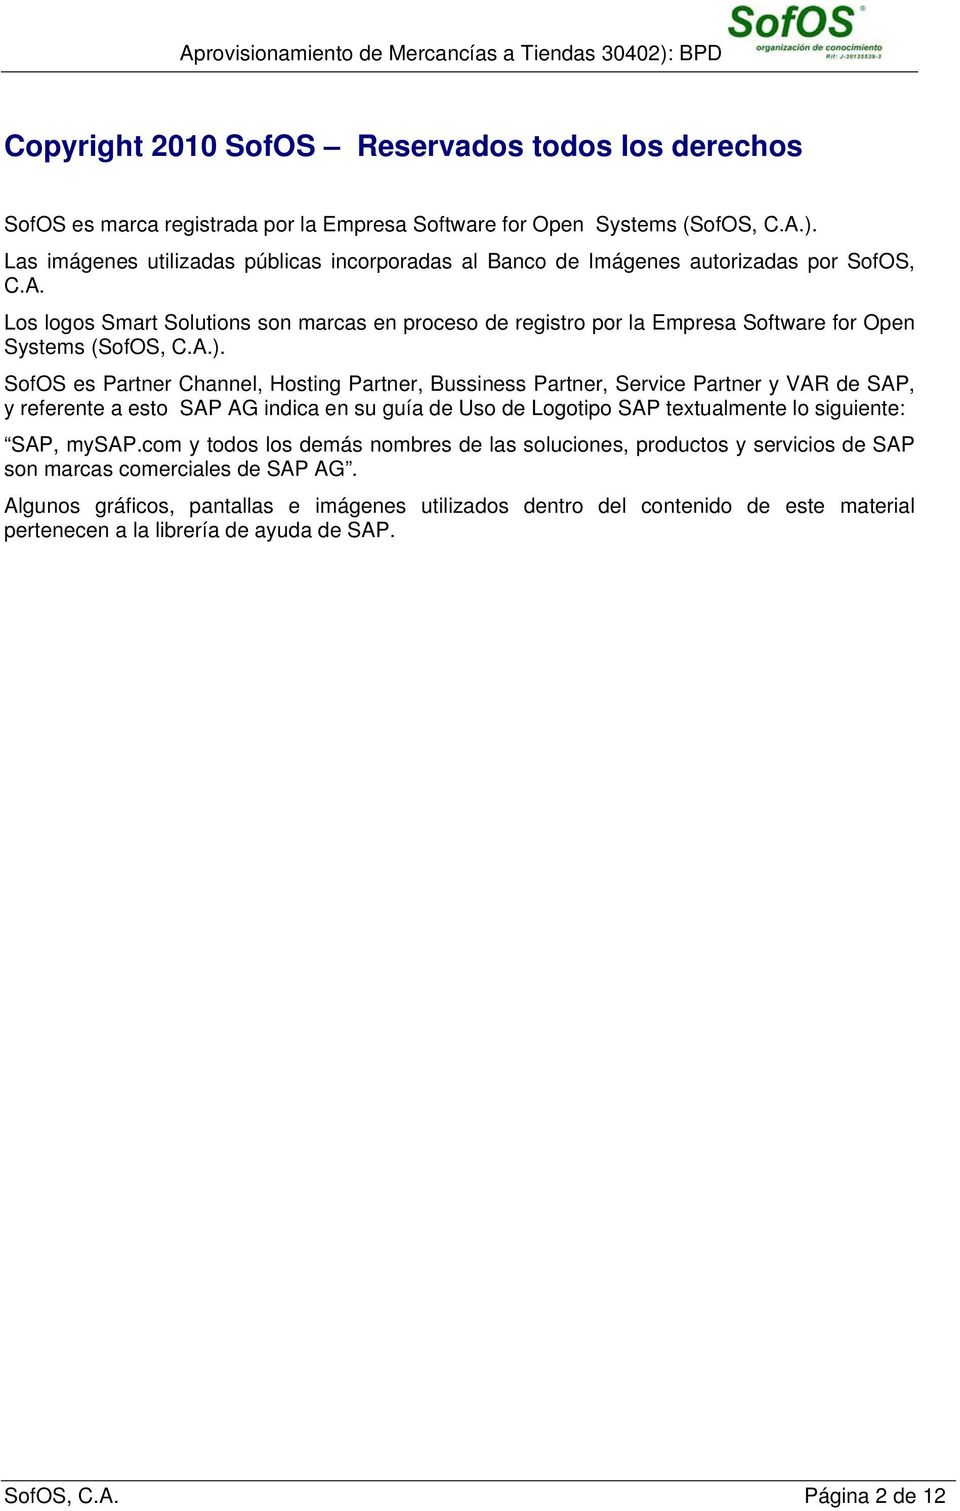 Los logos Smart Solutions son marcas en proceso registro por la Empresa Software for Open Systems (SofOS, C.A.).